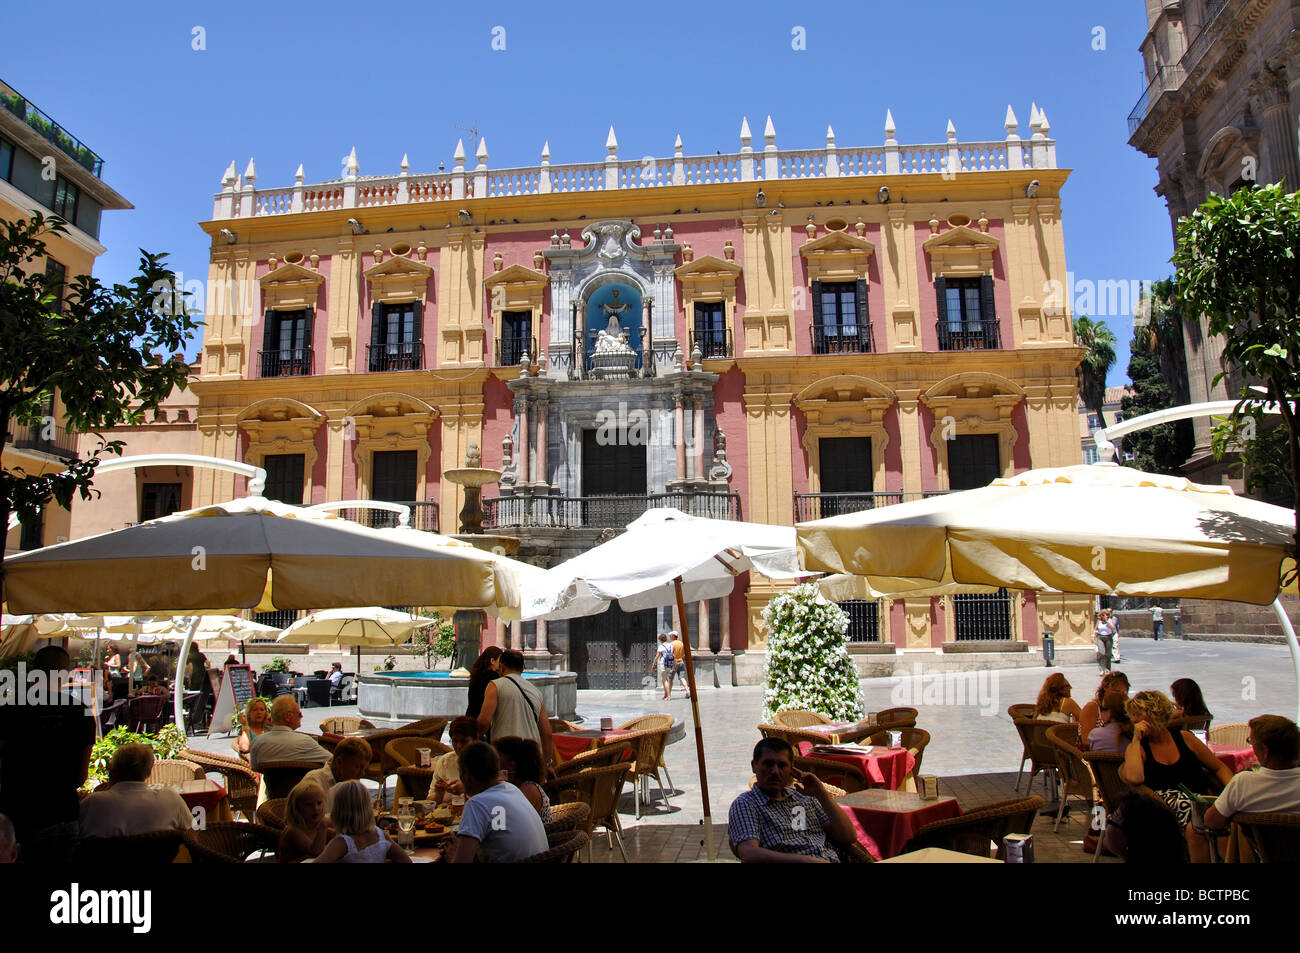 Plaza del Obispo, Malaga, Costa del Sol, Provinz Malaga, Andalusien, Spanien Stockfoto